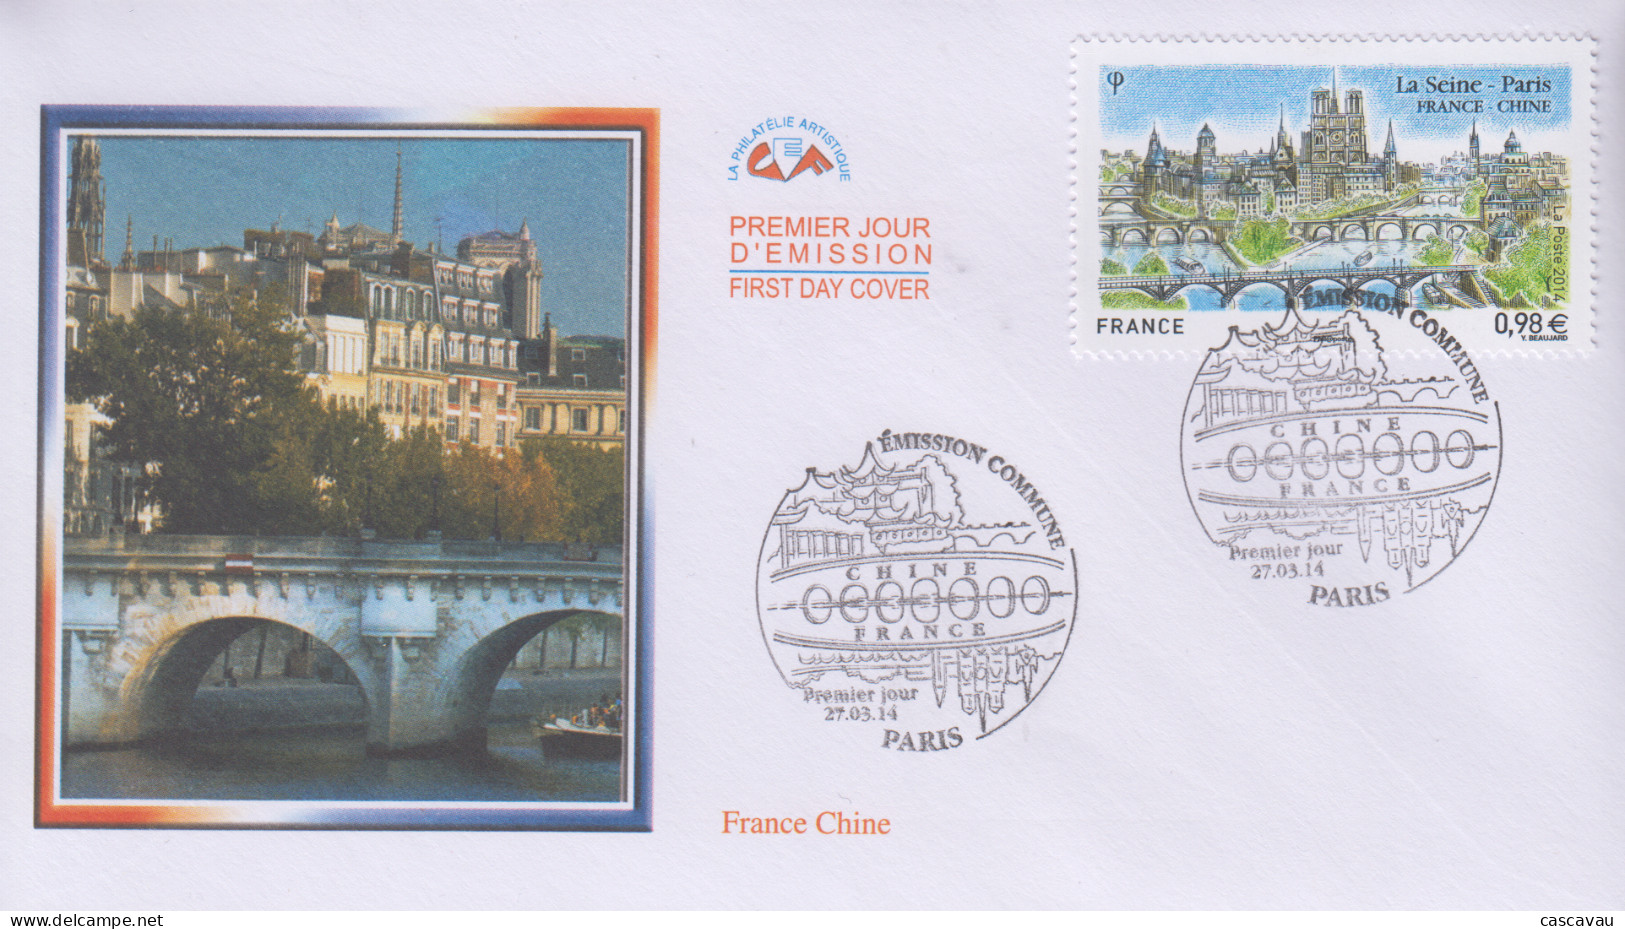 Enveloppe  FDC   1er   Jour    FRANCE    Emission  Commune   FRANCE - CHINE   La  SEINE - PARIS    2014 - Joint Issues